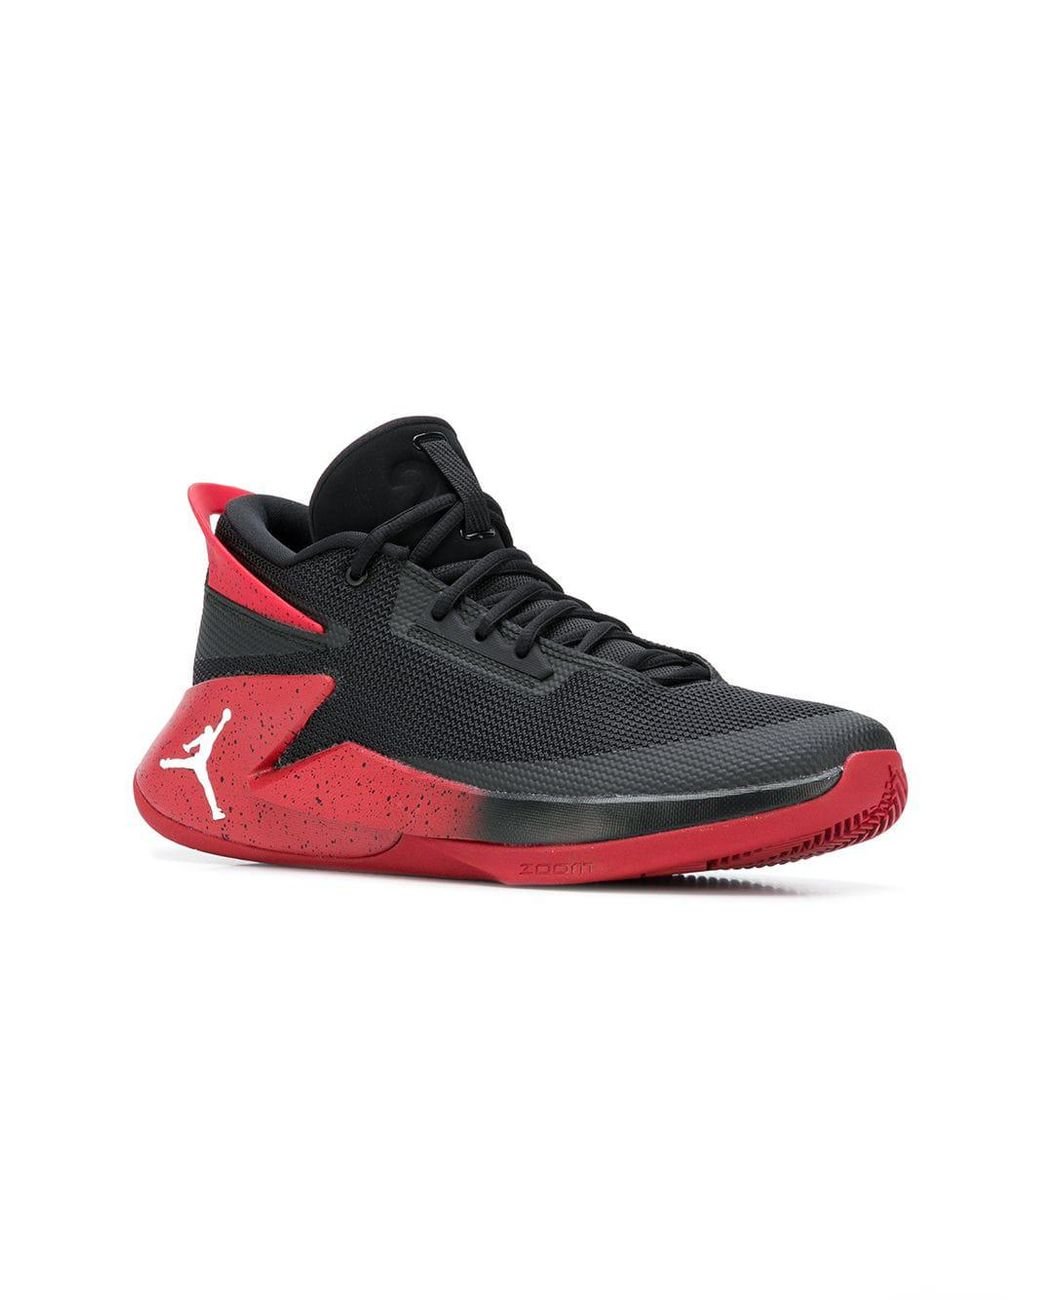 Zapatillas Jordan Fly Lockdown Nike de hombre de color Negro |